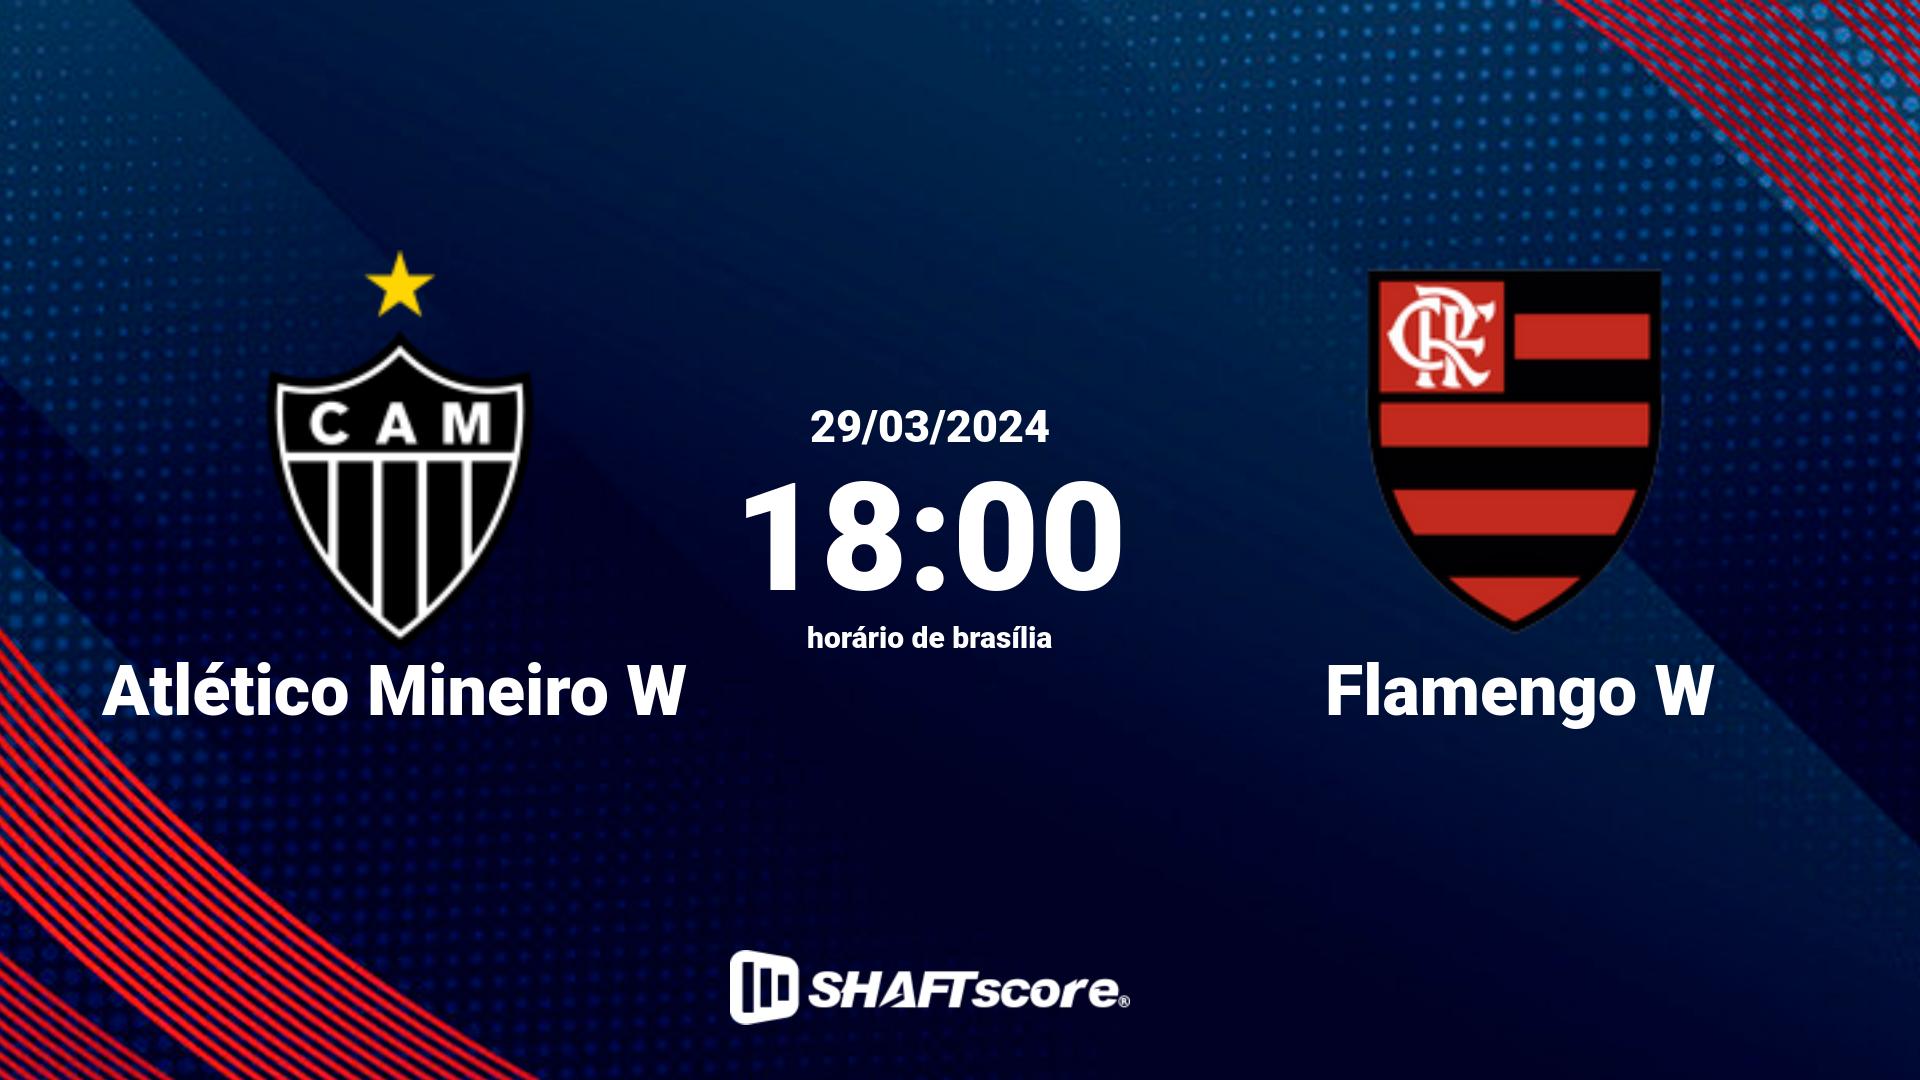 Estatísticas do jogo Atlético Mineiro W vs Flamengo W 29.03 18:00